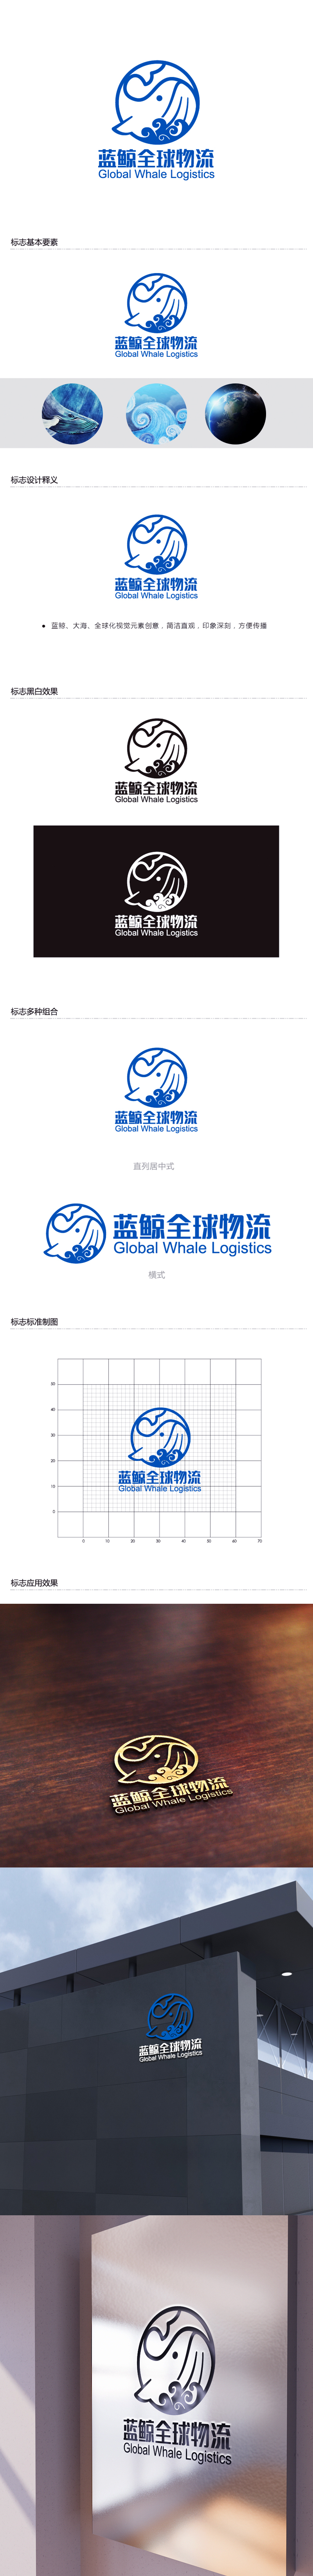 黄安悦的蓝鲸全球物流（广州）有限公司logo设计